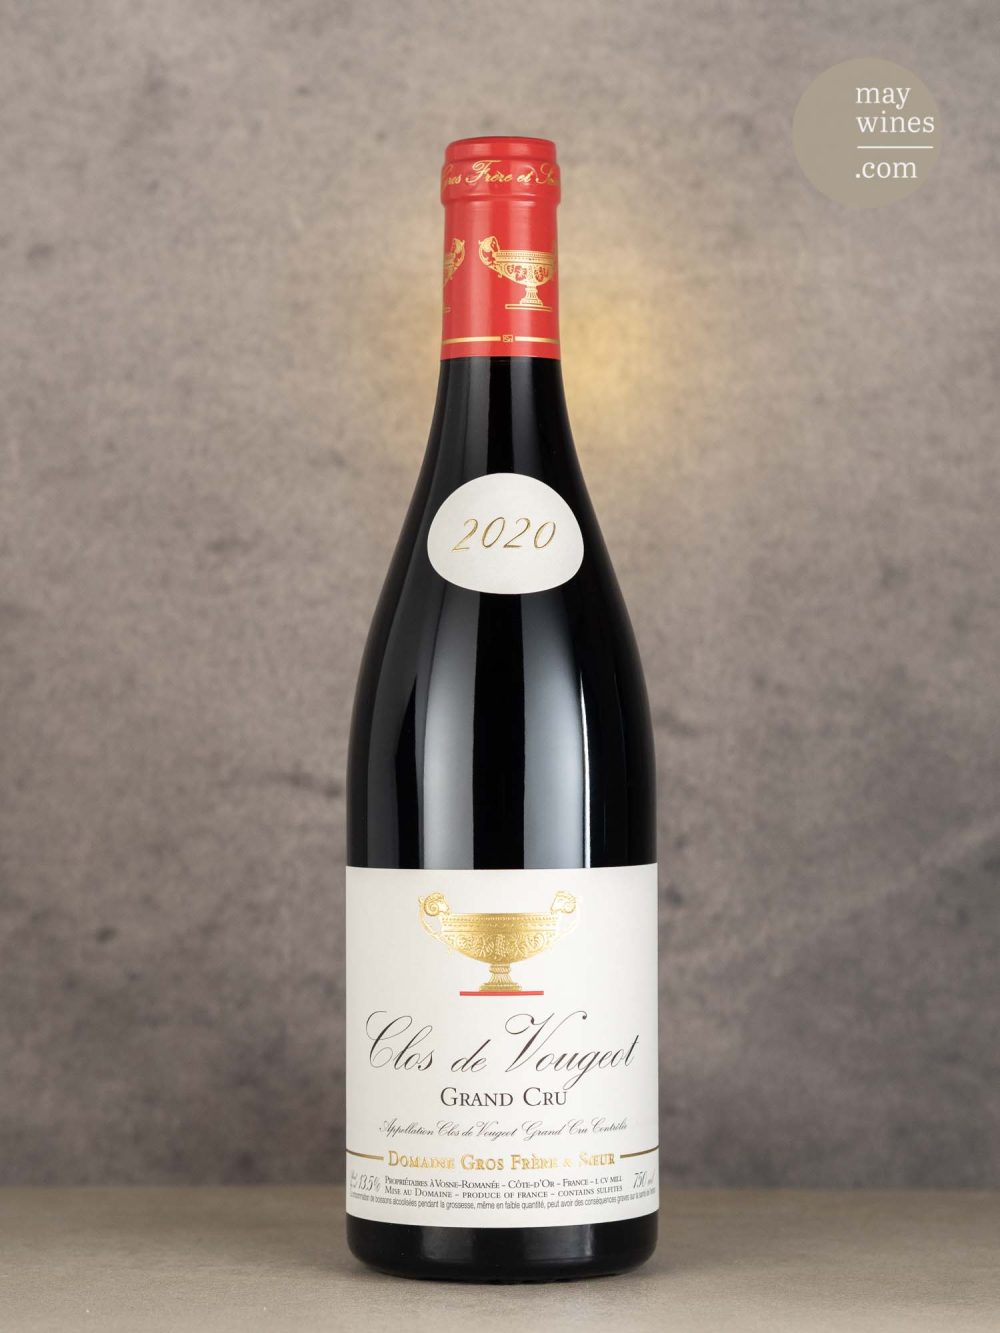 May Wines – Rotwein – 2020 Clos de Vougeot Grand Cru - Domaine Gros Frère et Soeur